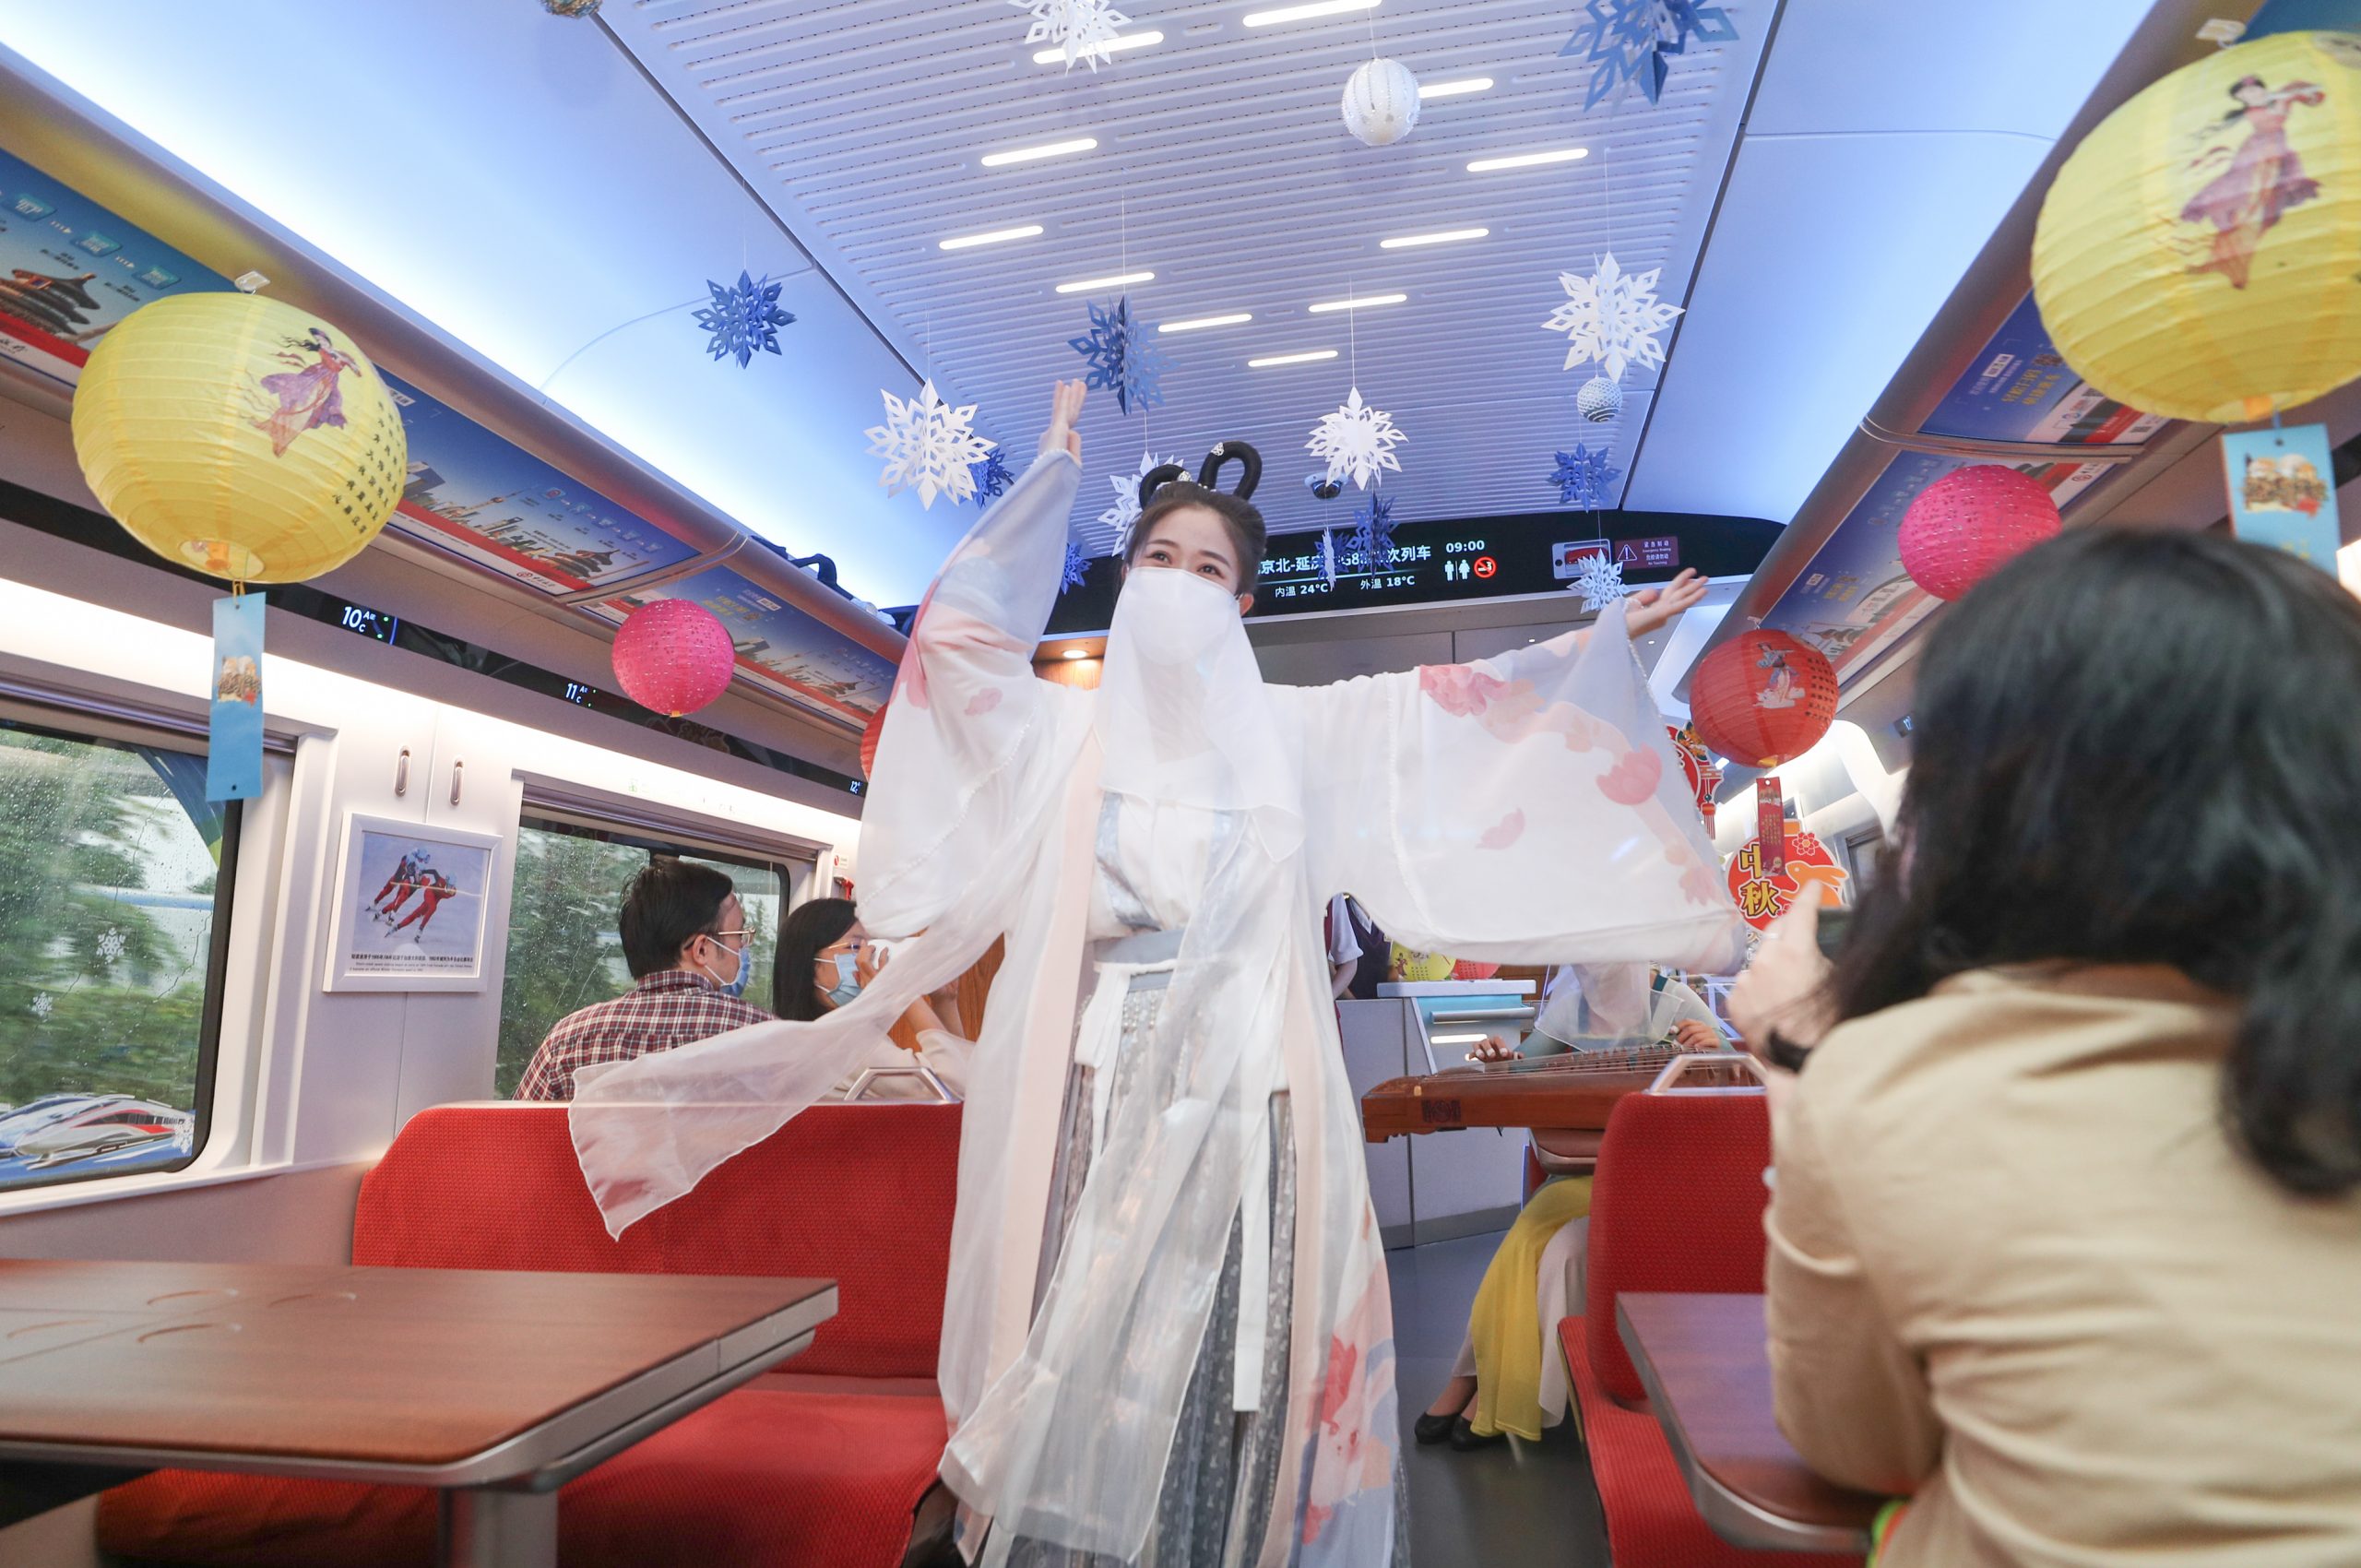 拼盘 2图／京张高铁乘务员扮作“嫦娥”向旅客送出中秋祝福